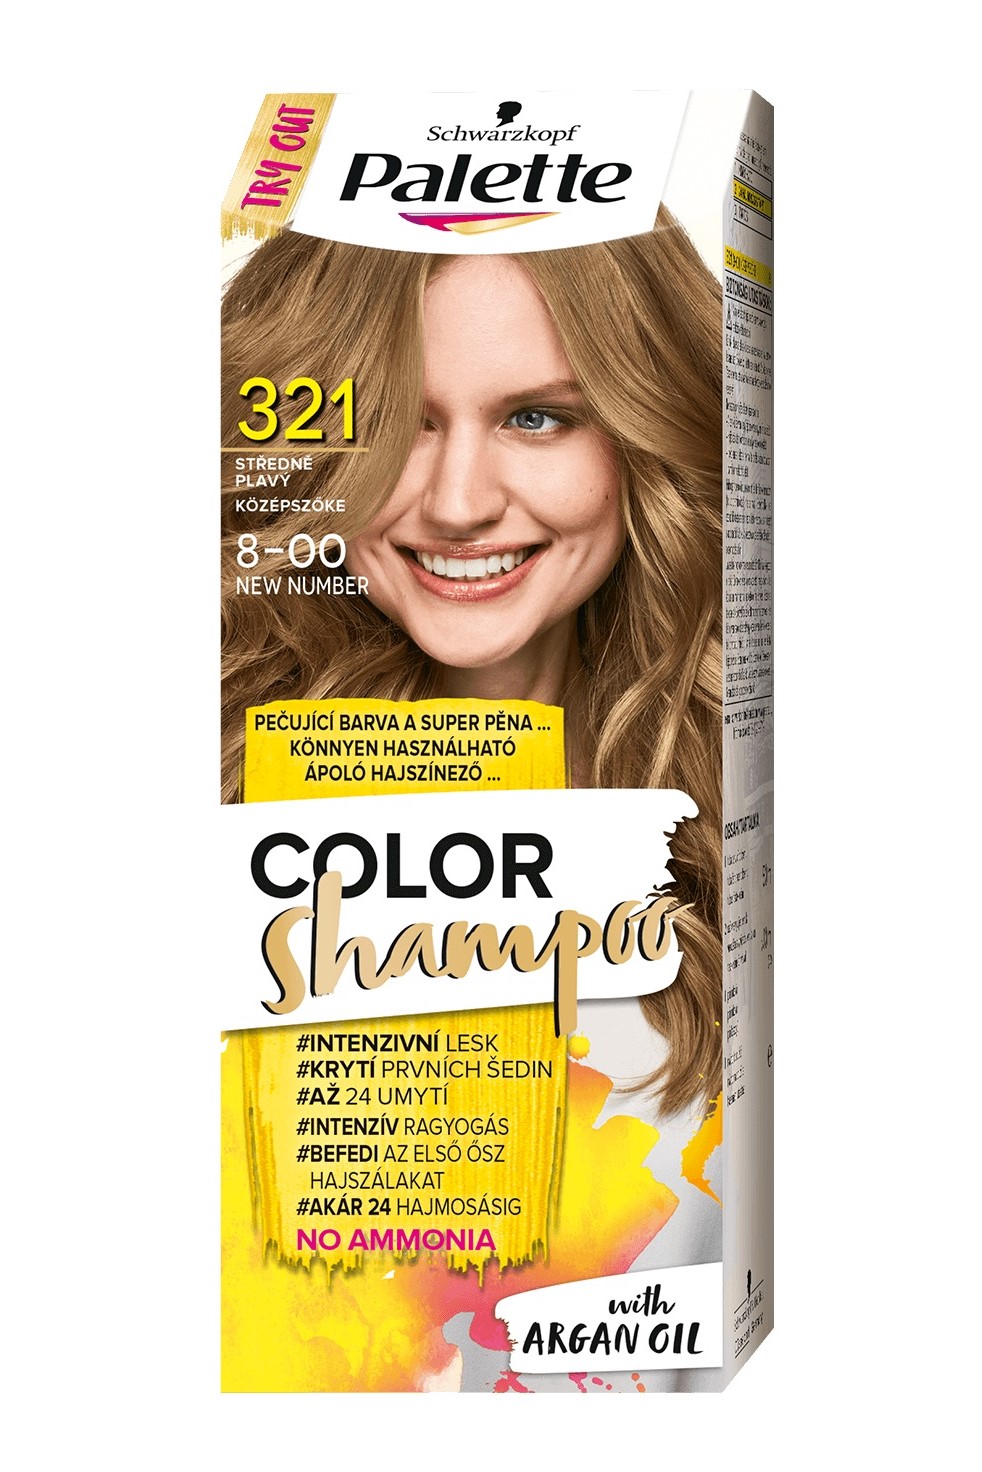 Palette Color Shampoo 8-00 (321) Středně plavý